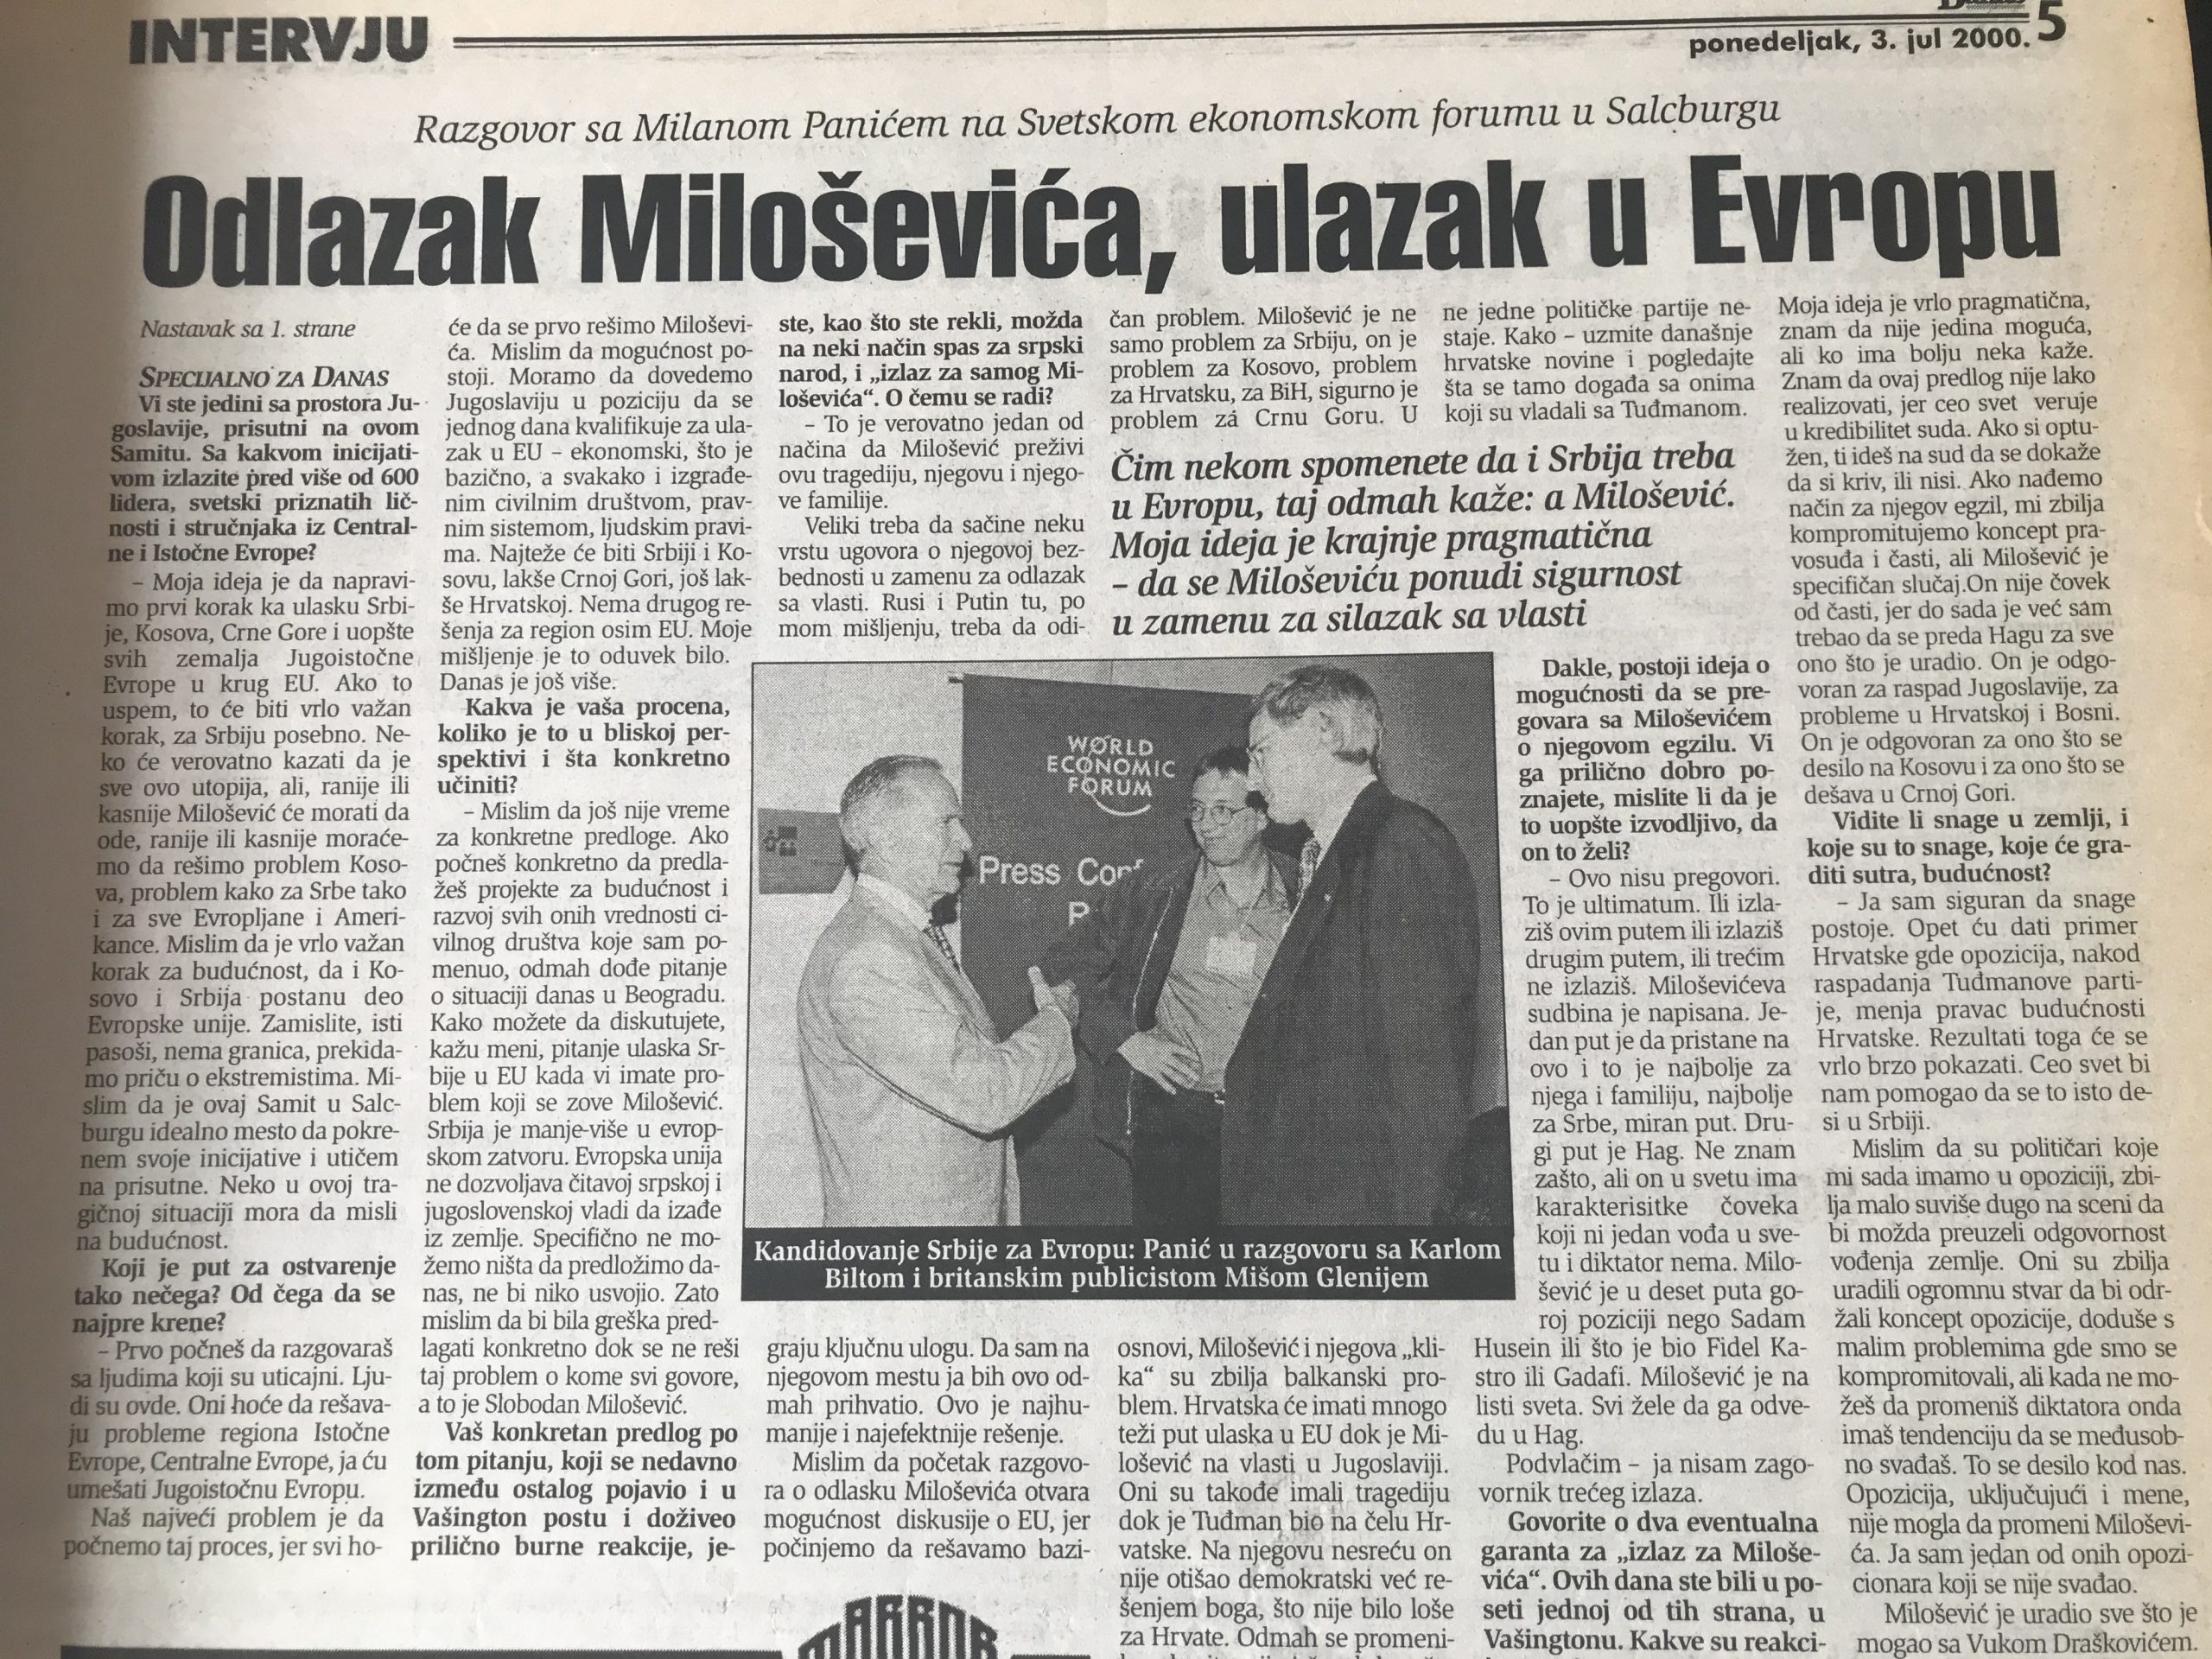 Milan Panić pre 20 godina imao ideju o „spasavanju“ Srbije i njenog predsednika 1